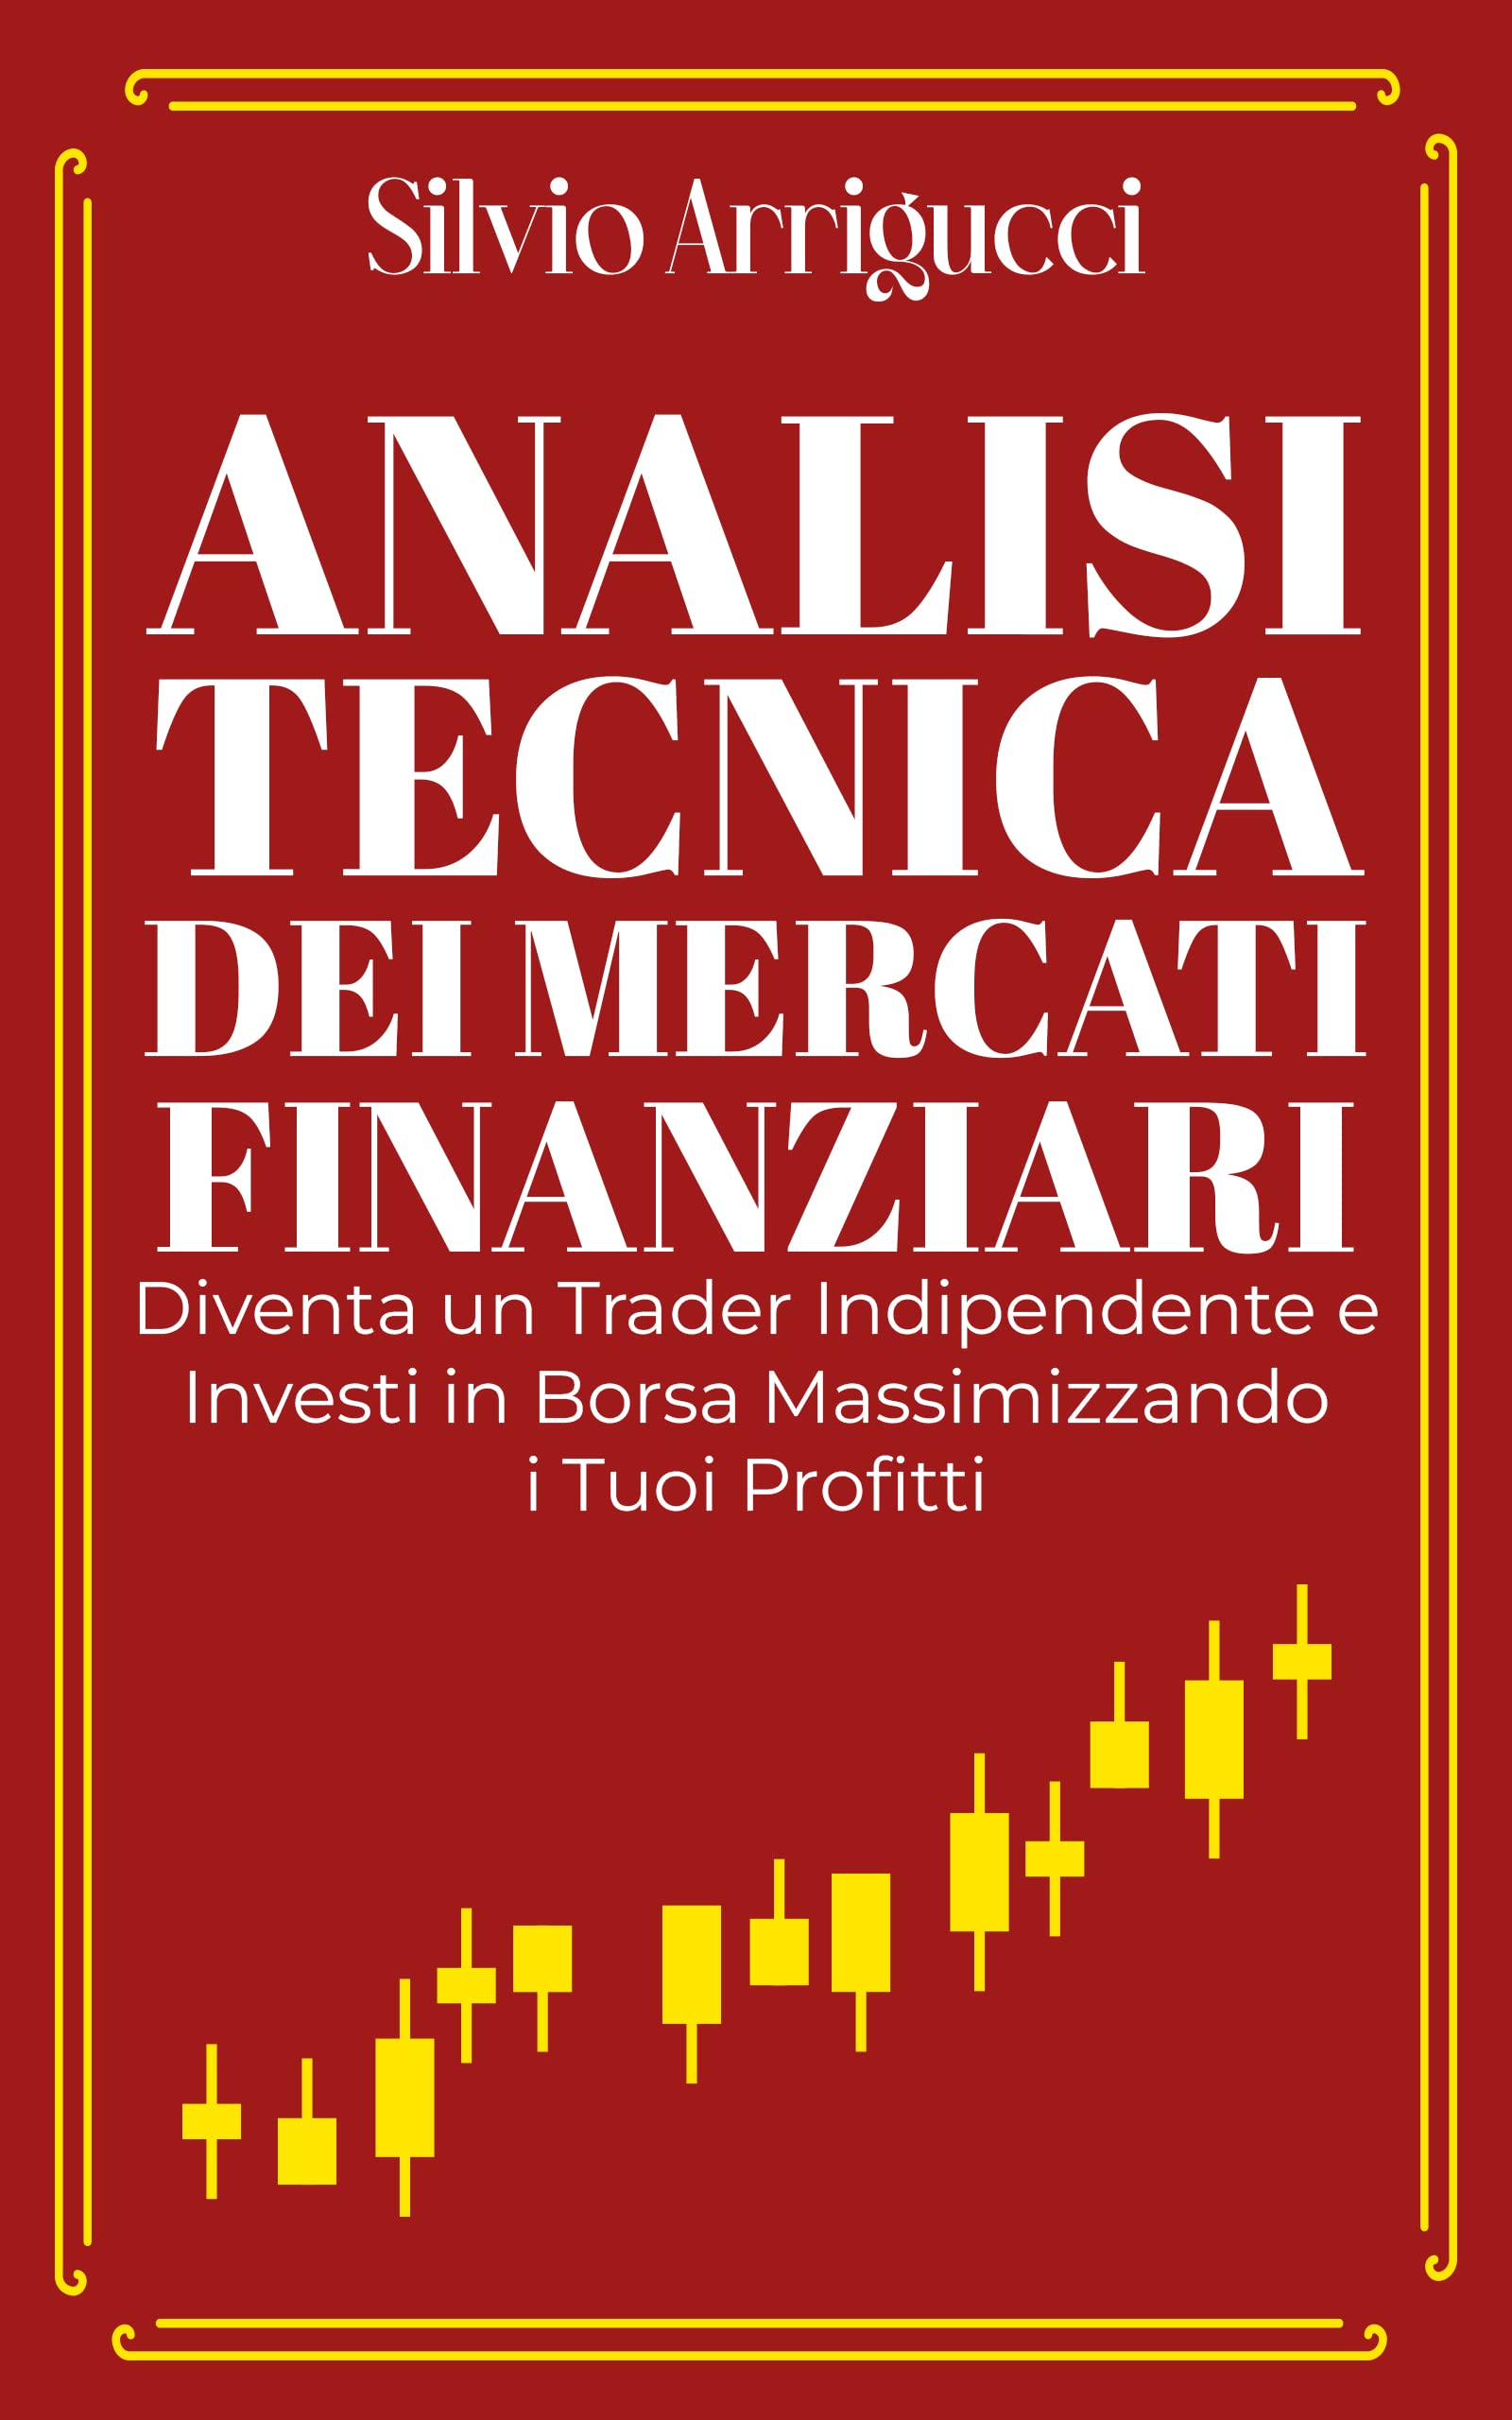 Analisi Tecnica Dei Mercati Finanziari: Diventa un Trader Indipendente e Investi in Borsa Massimizzando i Tuoi Profitti (Italian Edition)